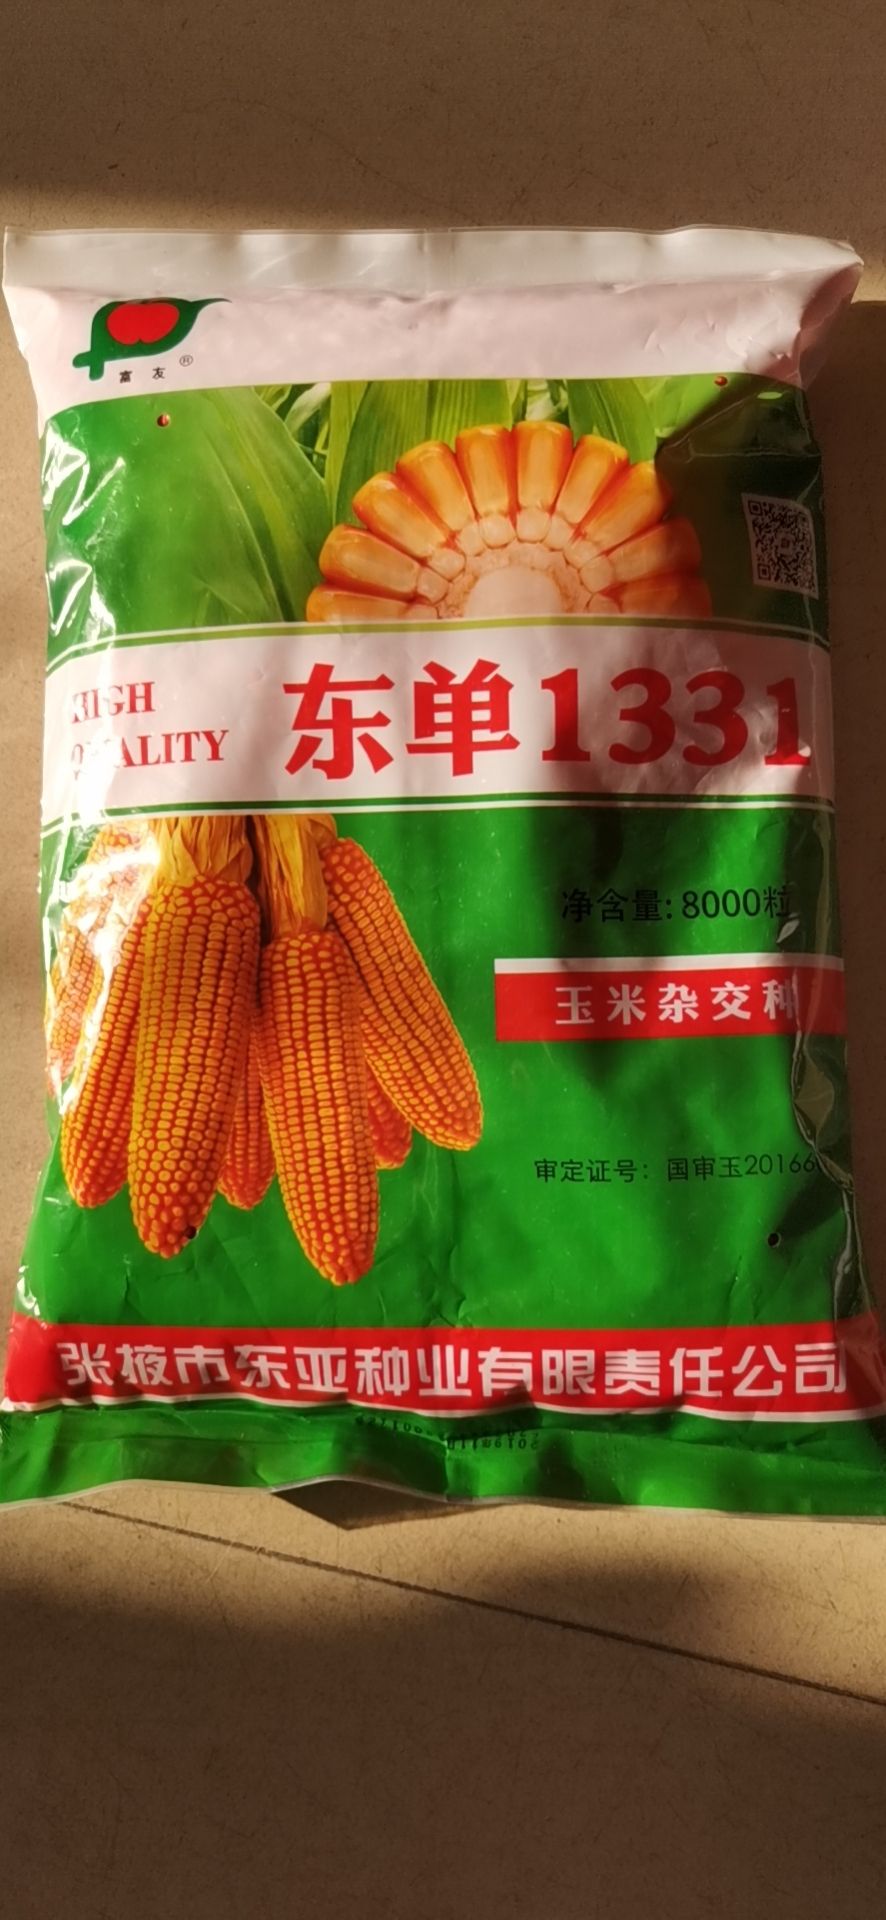 东单1331玉米种子 东单1331玉米种,8000粒包装